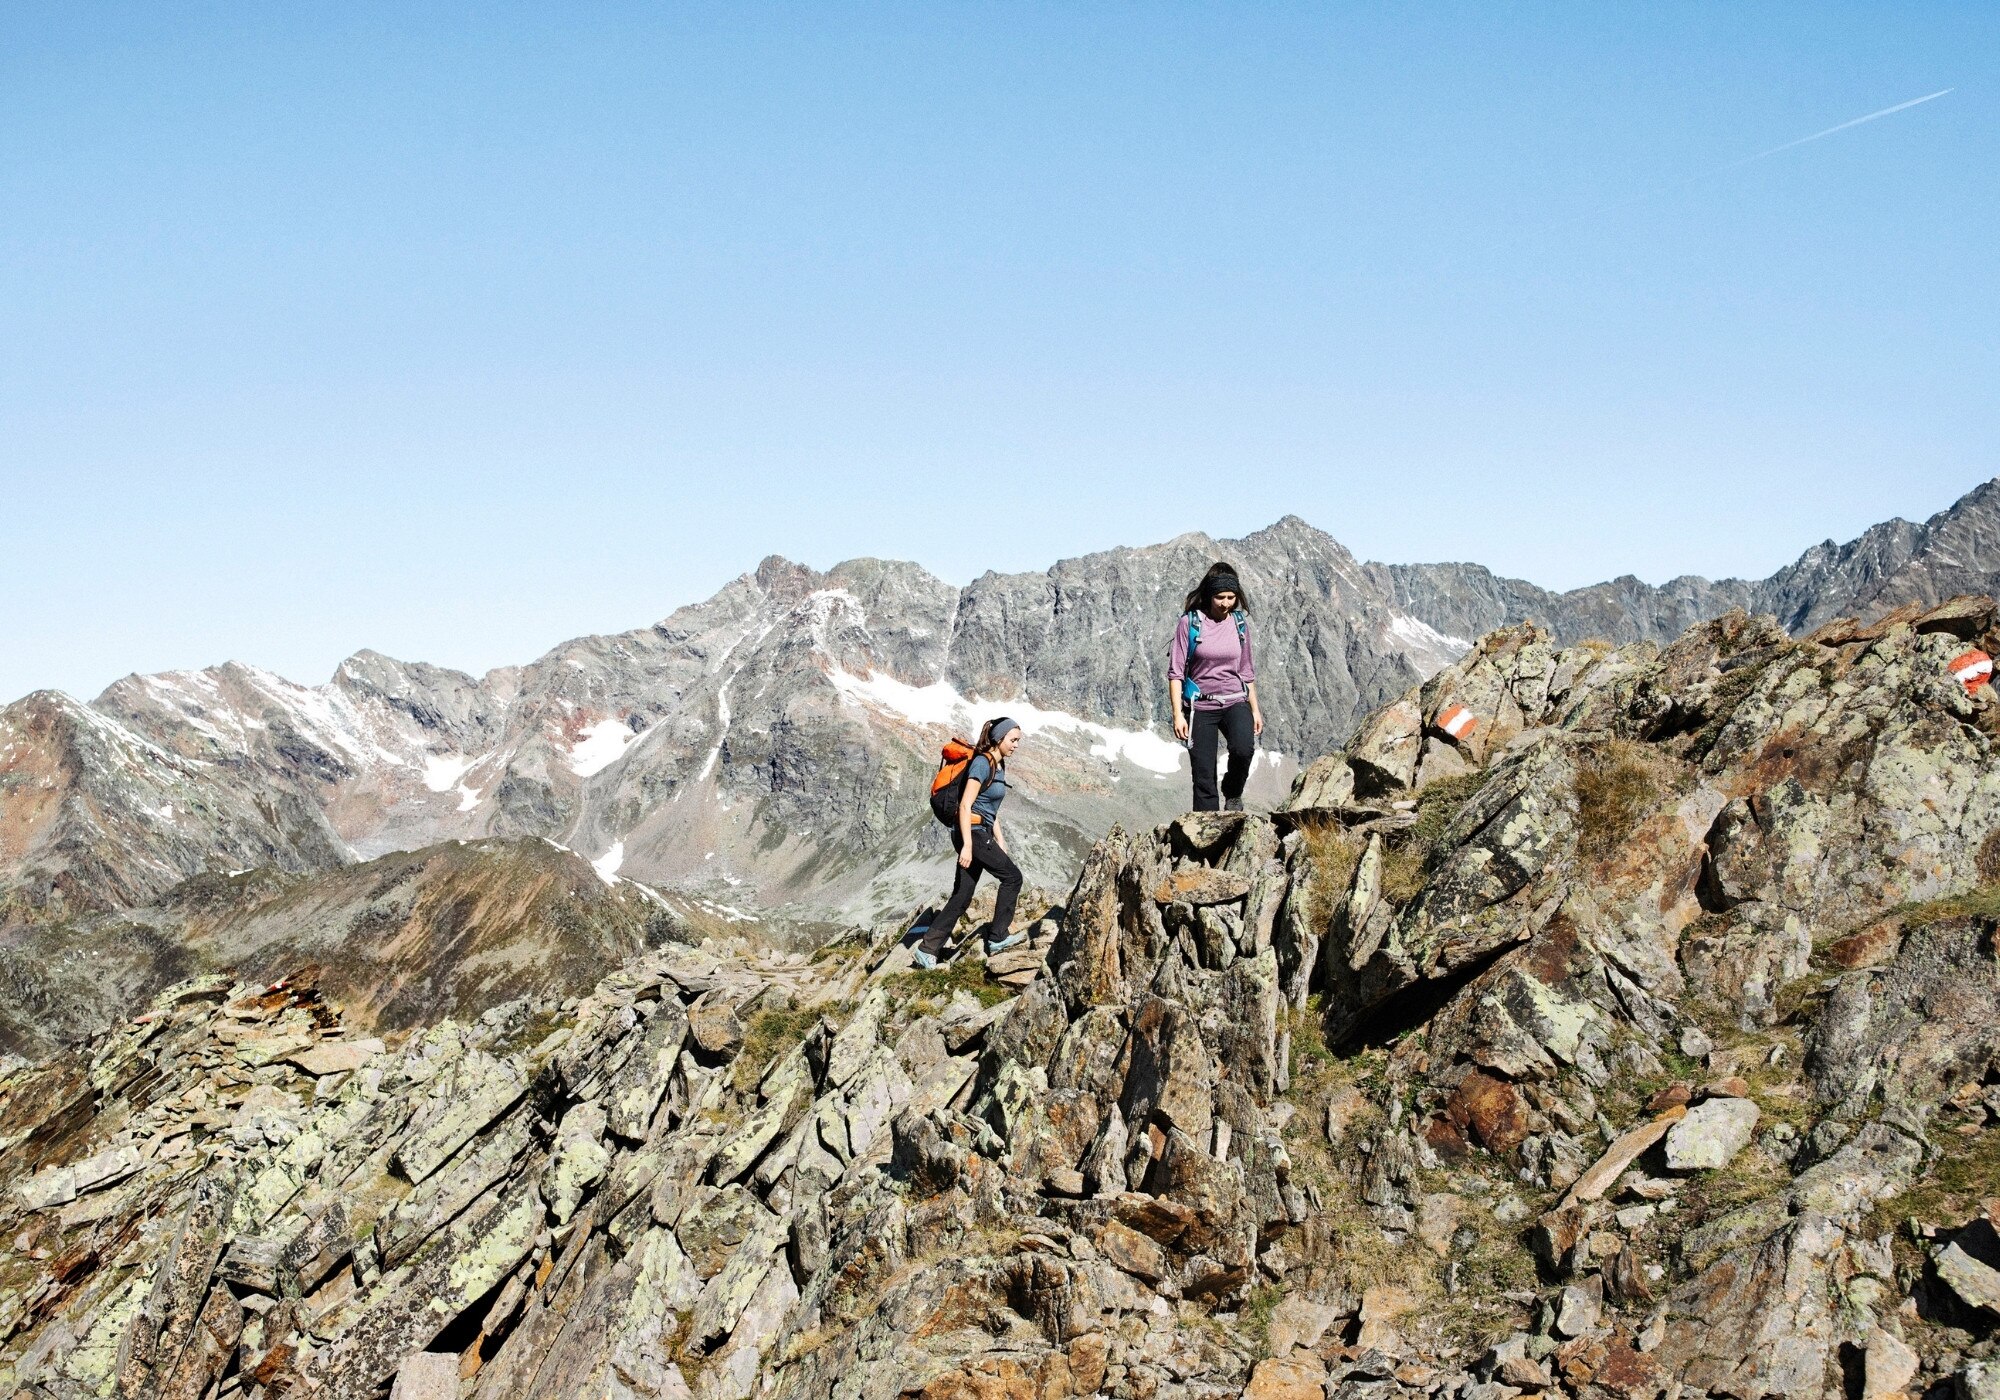 Bergsteiger bezwingen das felsige Gelände.